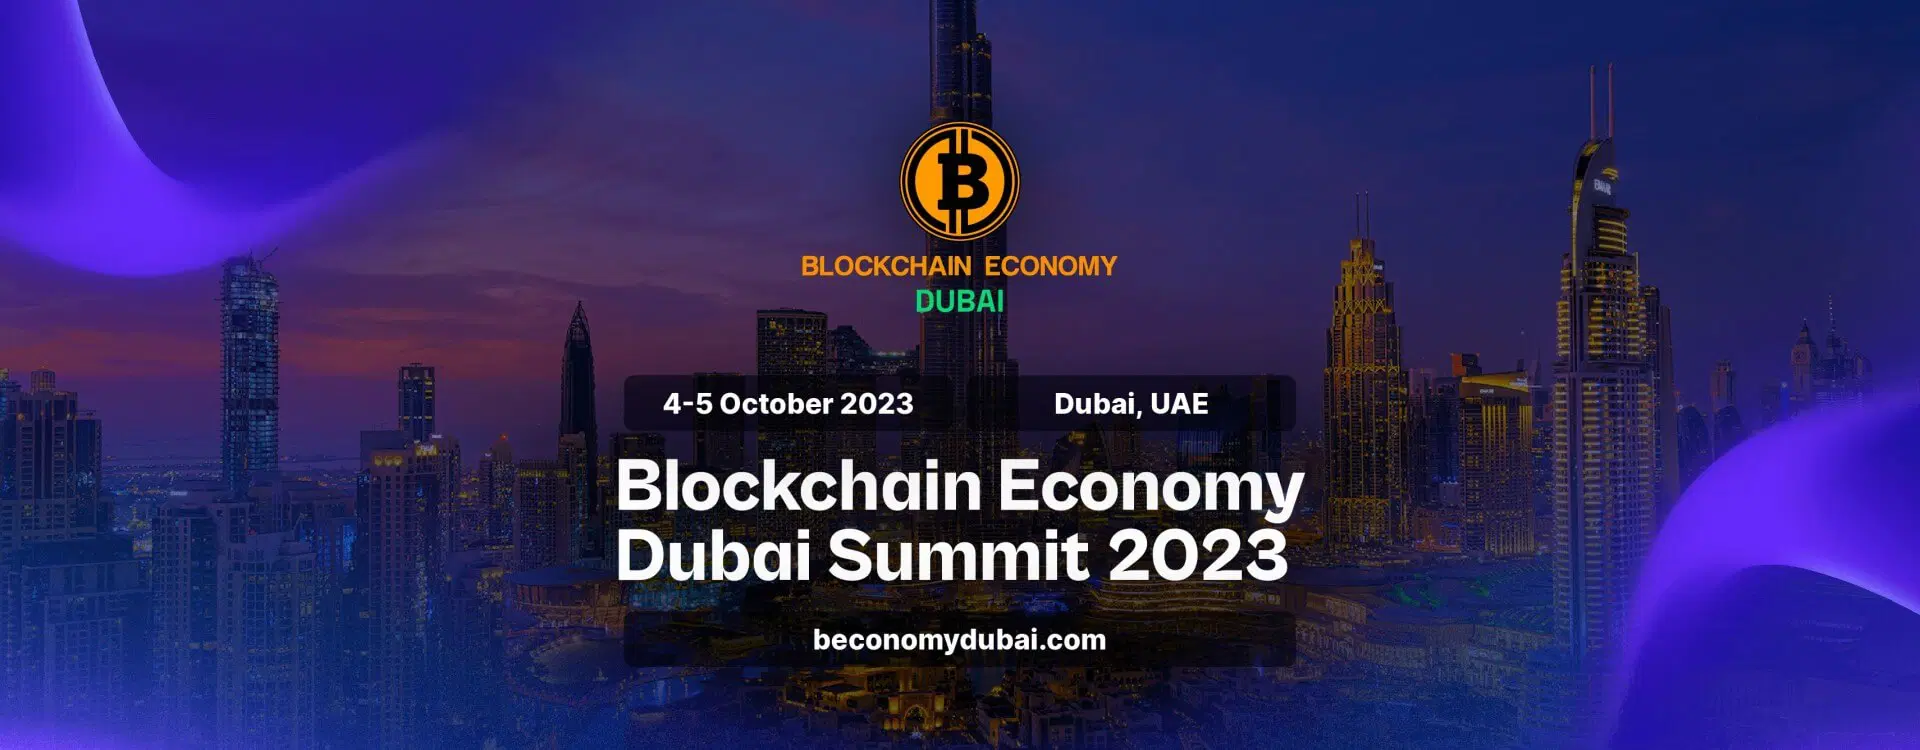 Future Blockchain Summit Dubai 2023